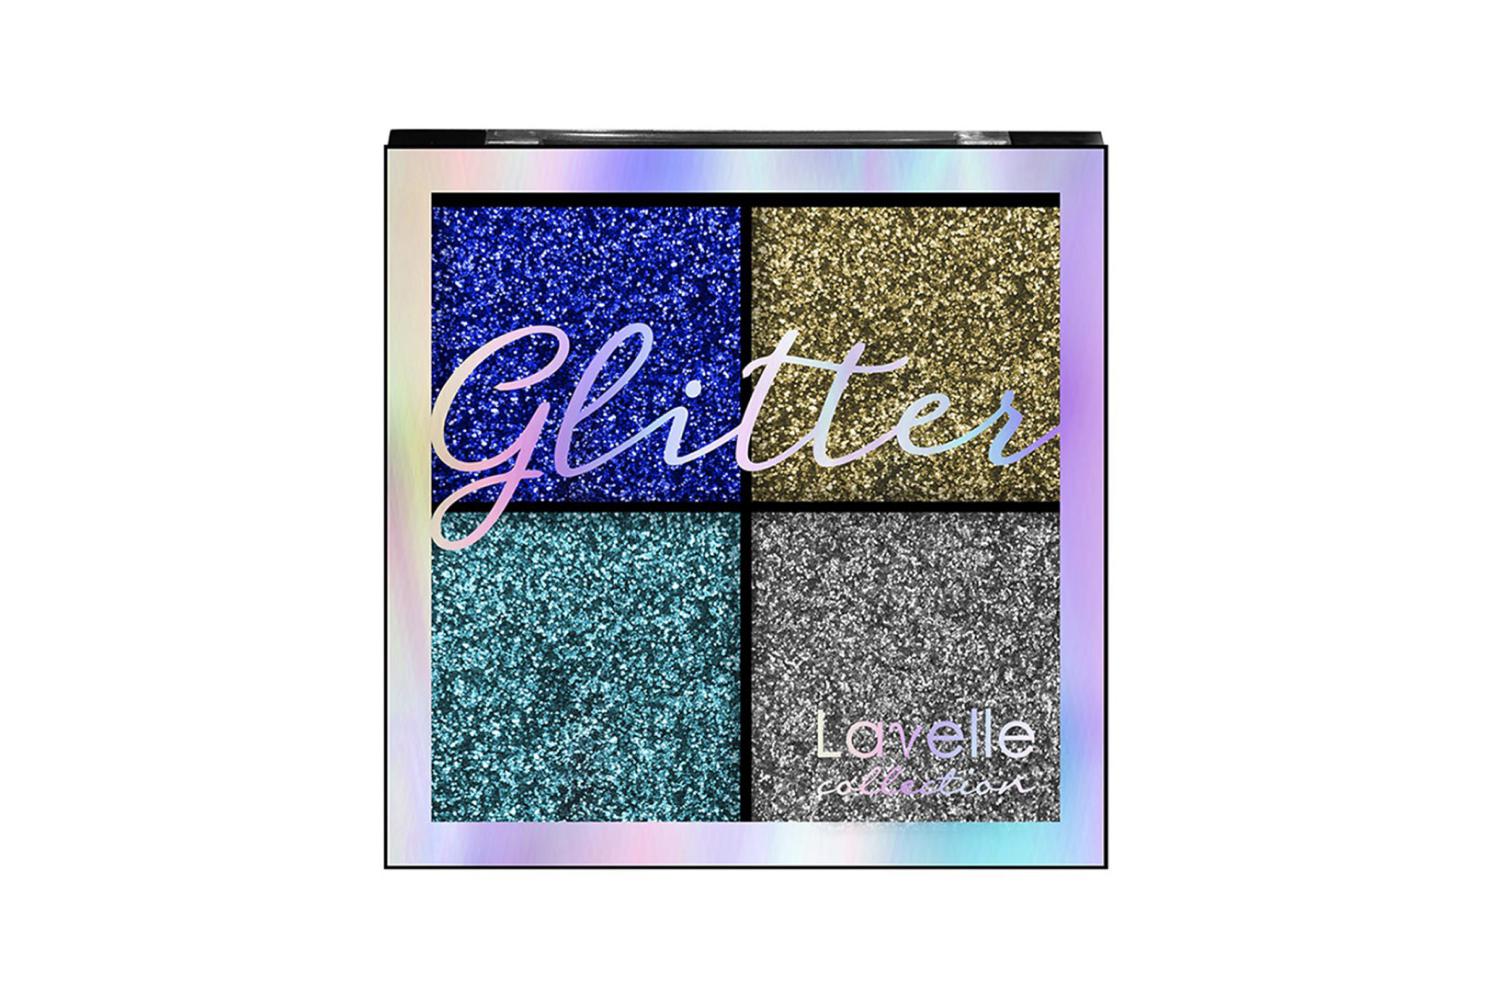 Палетка глиттеров Glitter, оттенок 01, Lavelle Collection, 267 руб. (Wildberries)